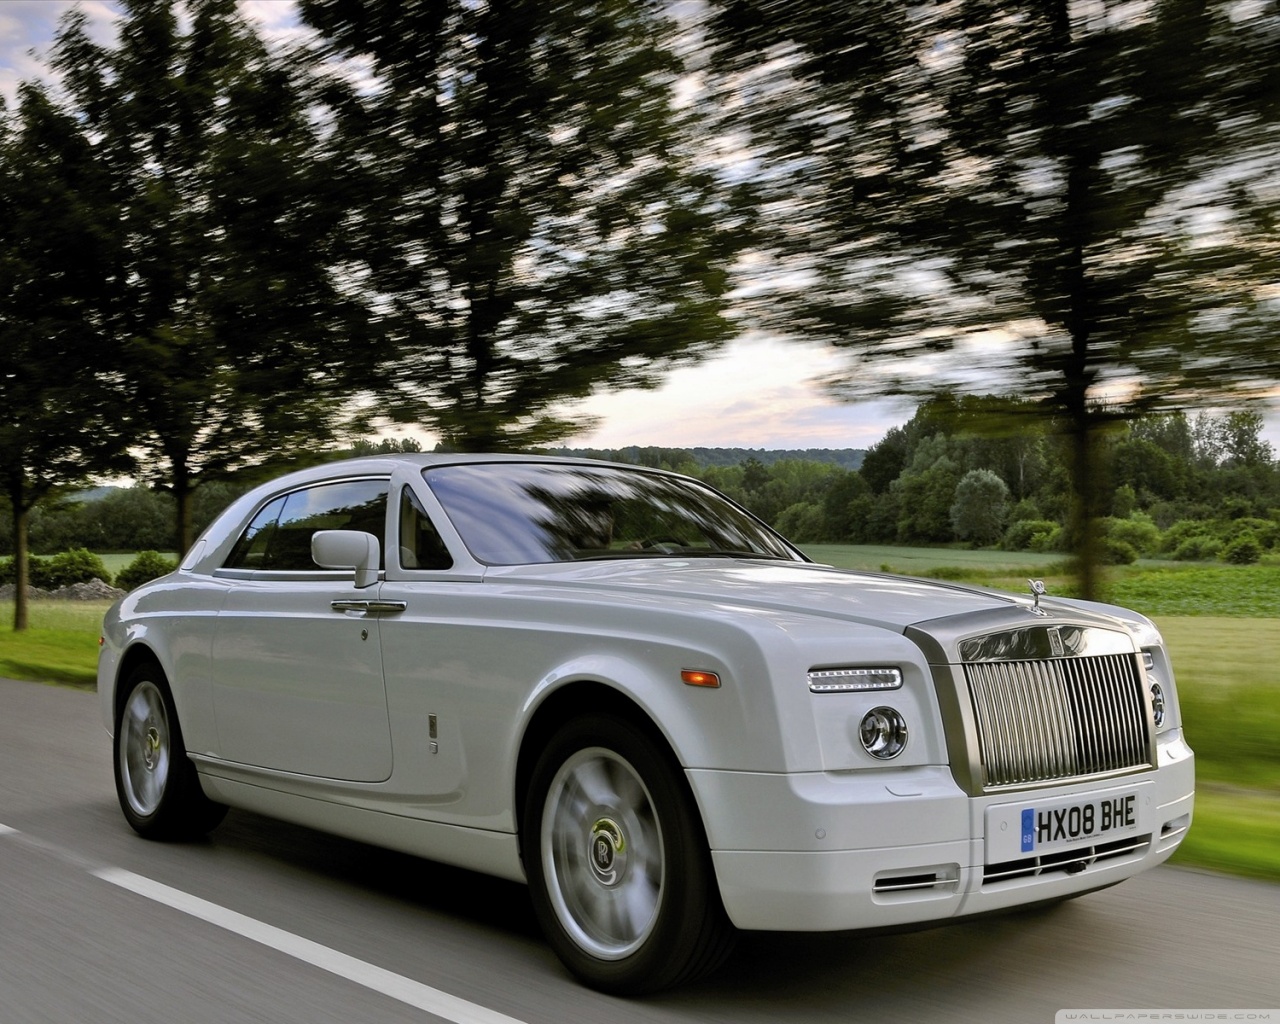 Download Rolls Royce Super Car 2 wallpaper